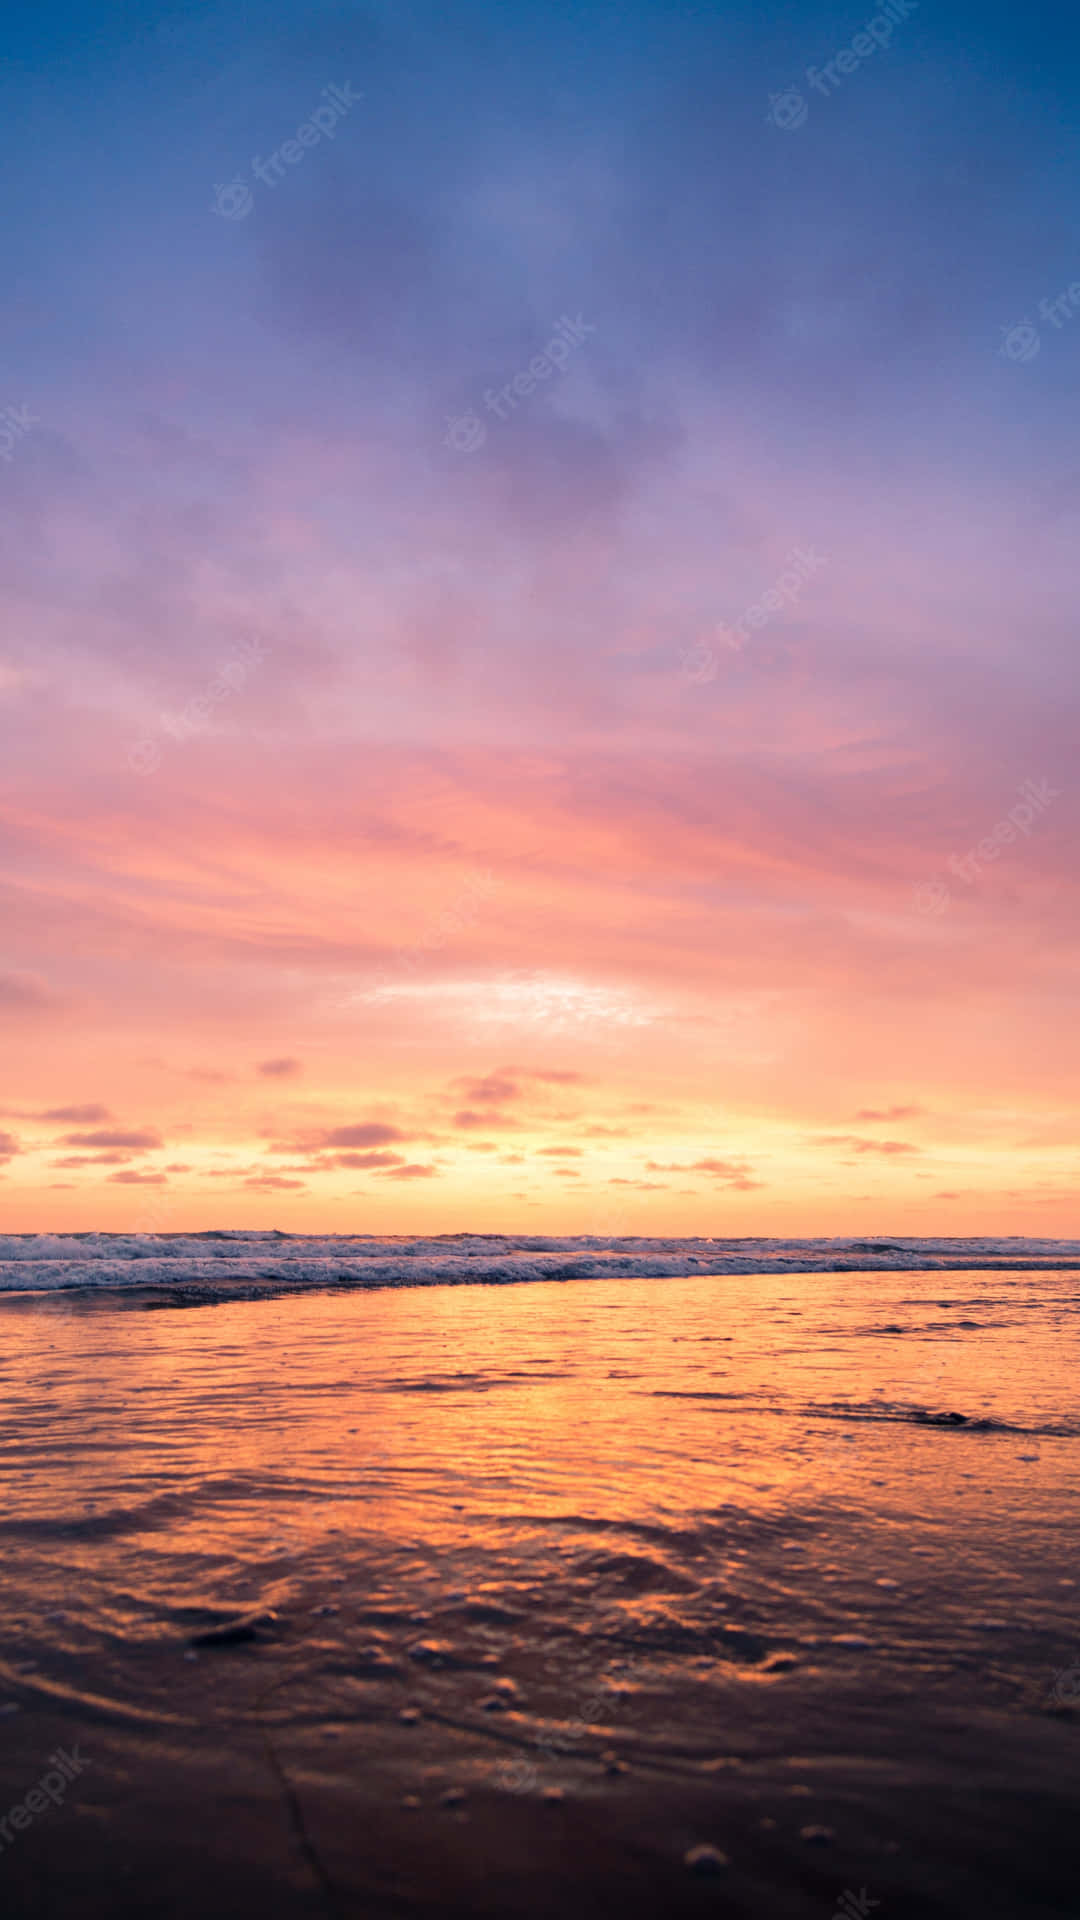 En solnedgang på stranden med et farverigt himmel. Wallpaper